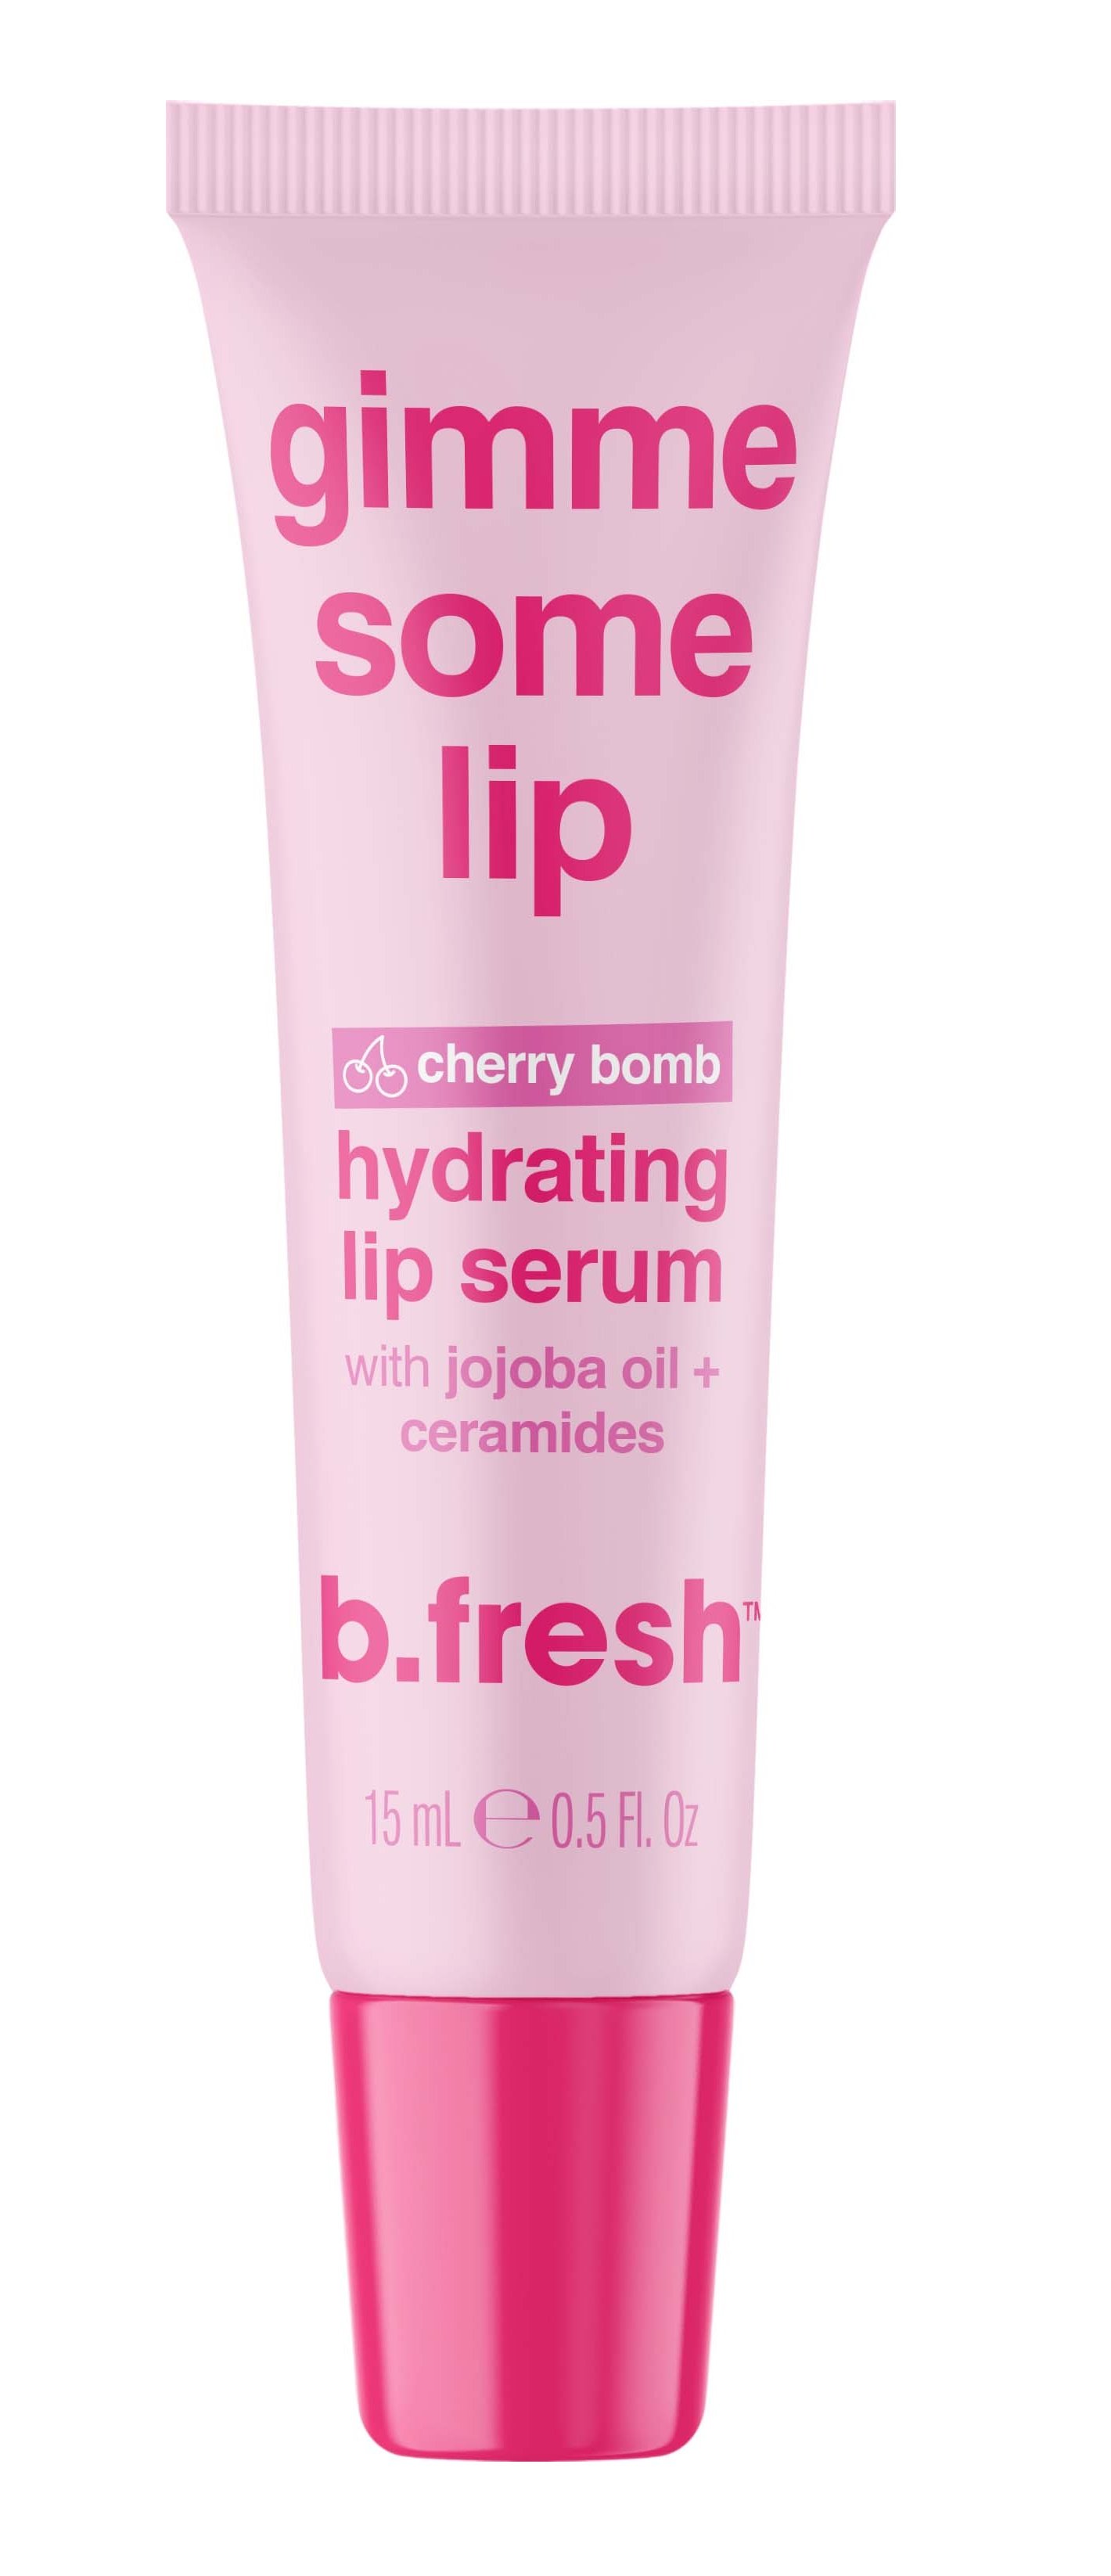 b.fresh - Gimme Some Lip Lip Serum 15 ml - Skjønnhet